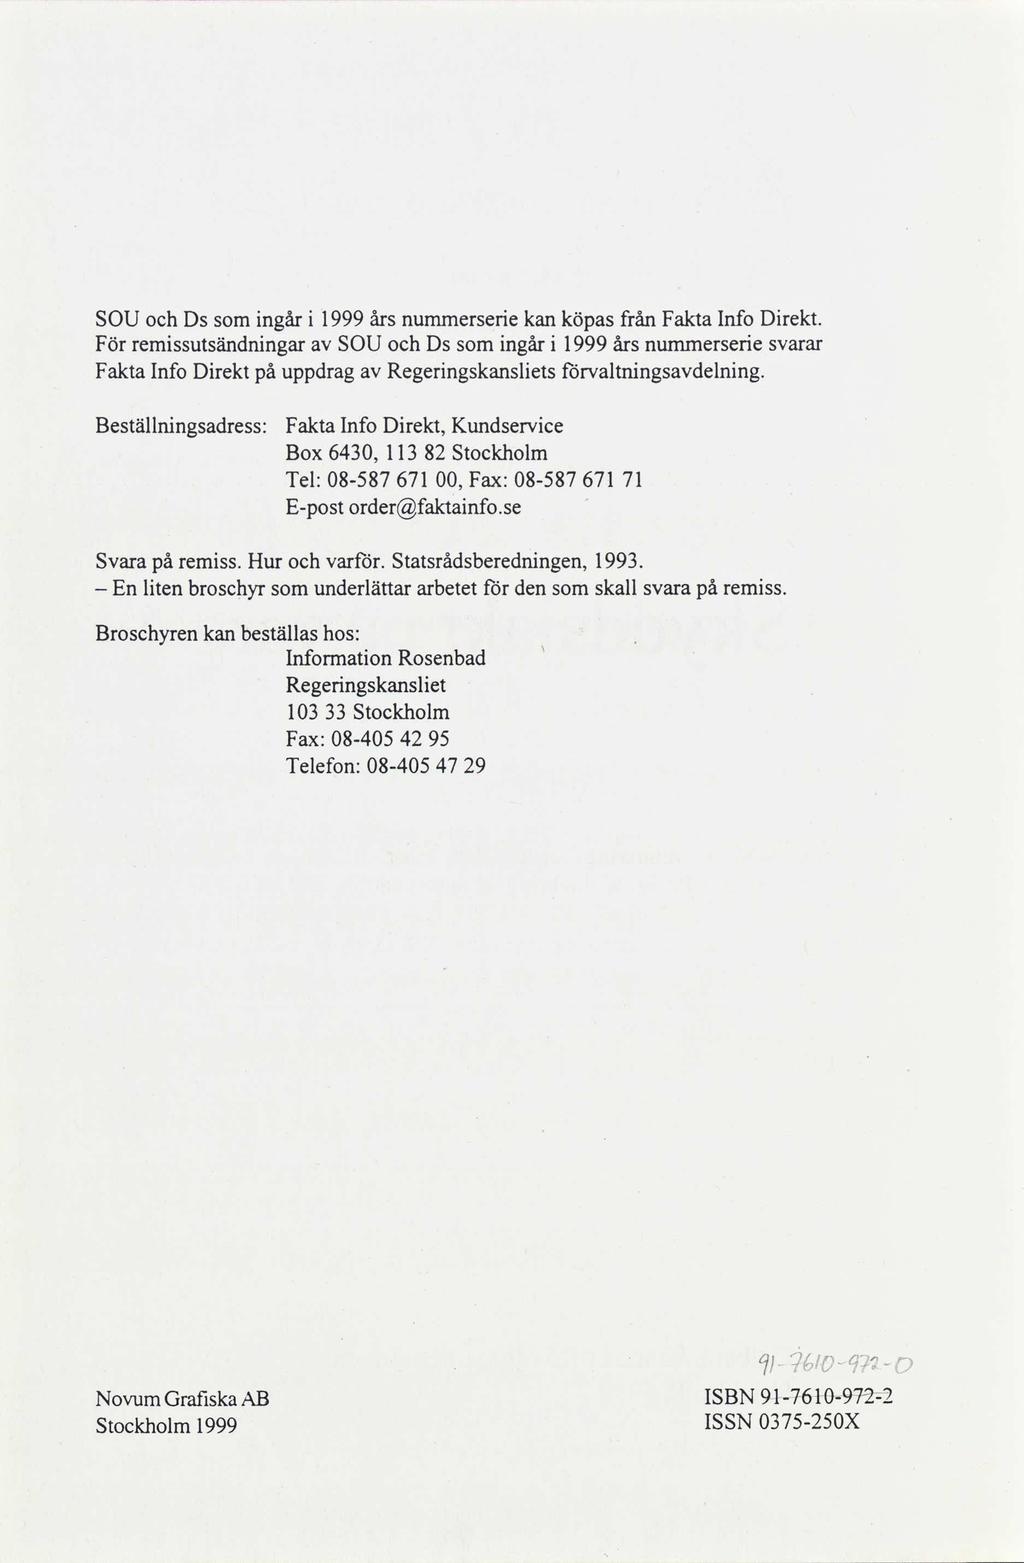 SOU och Ds som ingår i 1999 års nummerserie kan köpas från Fakta Info Direkt.